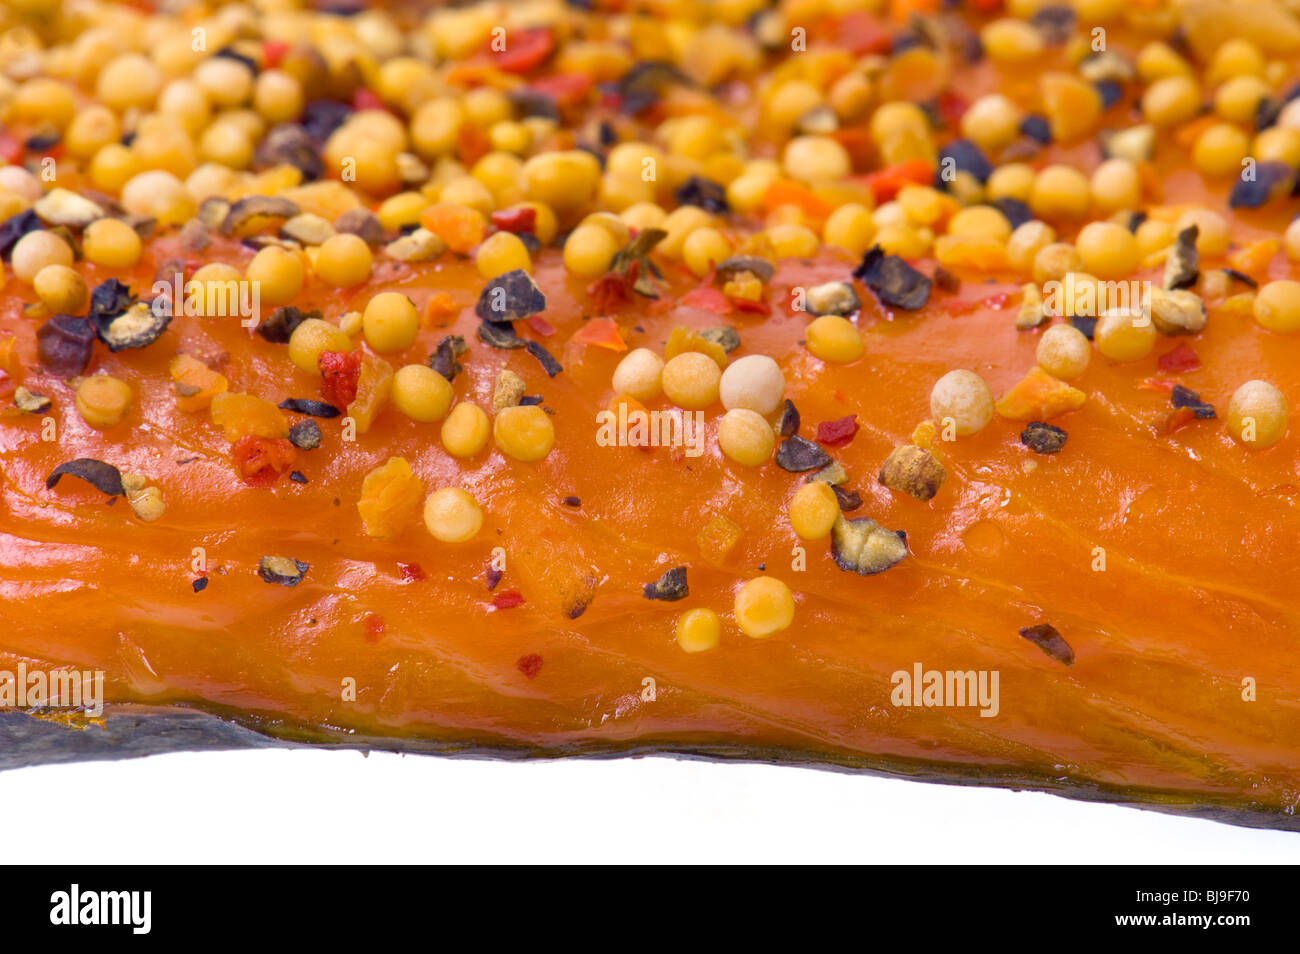 Stremel-Stremel di salmone affumicato a caldo di pezzi di salmone filetto di pesce con peperoni e spezie pepe paprica cipolla senape di fumo s Foto Stock